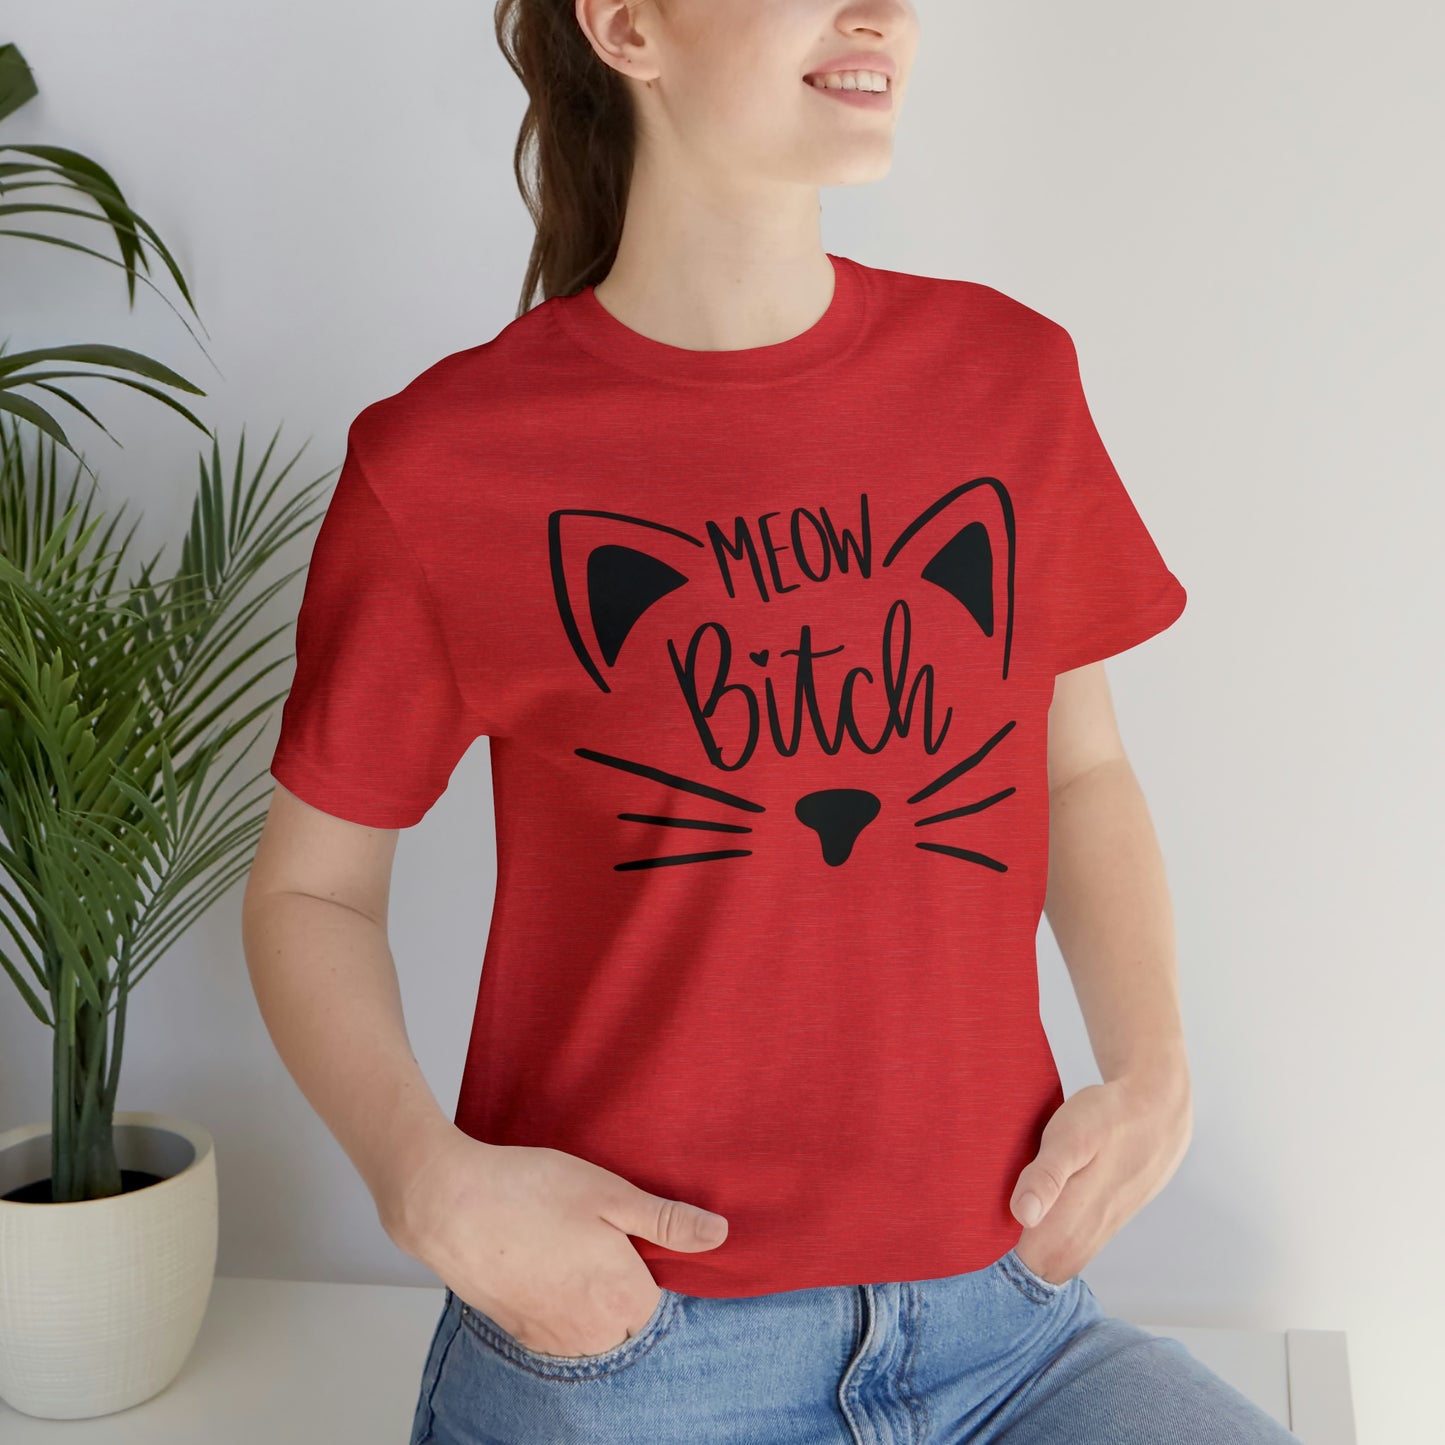 Meow Bitch Short Sleeve T-shirt